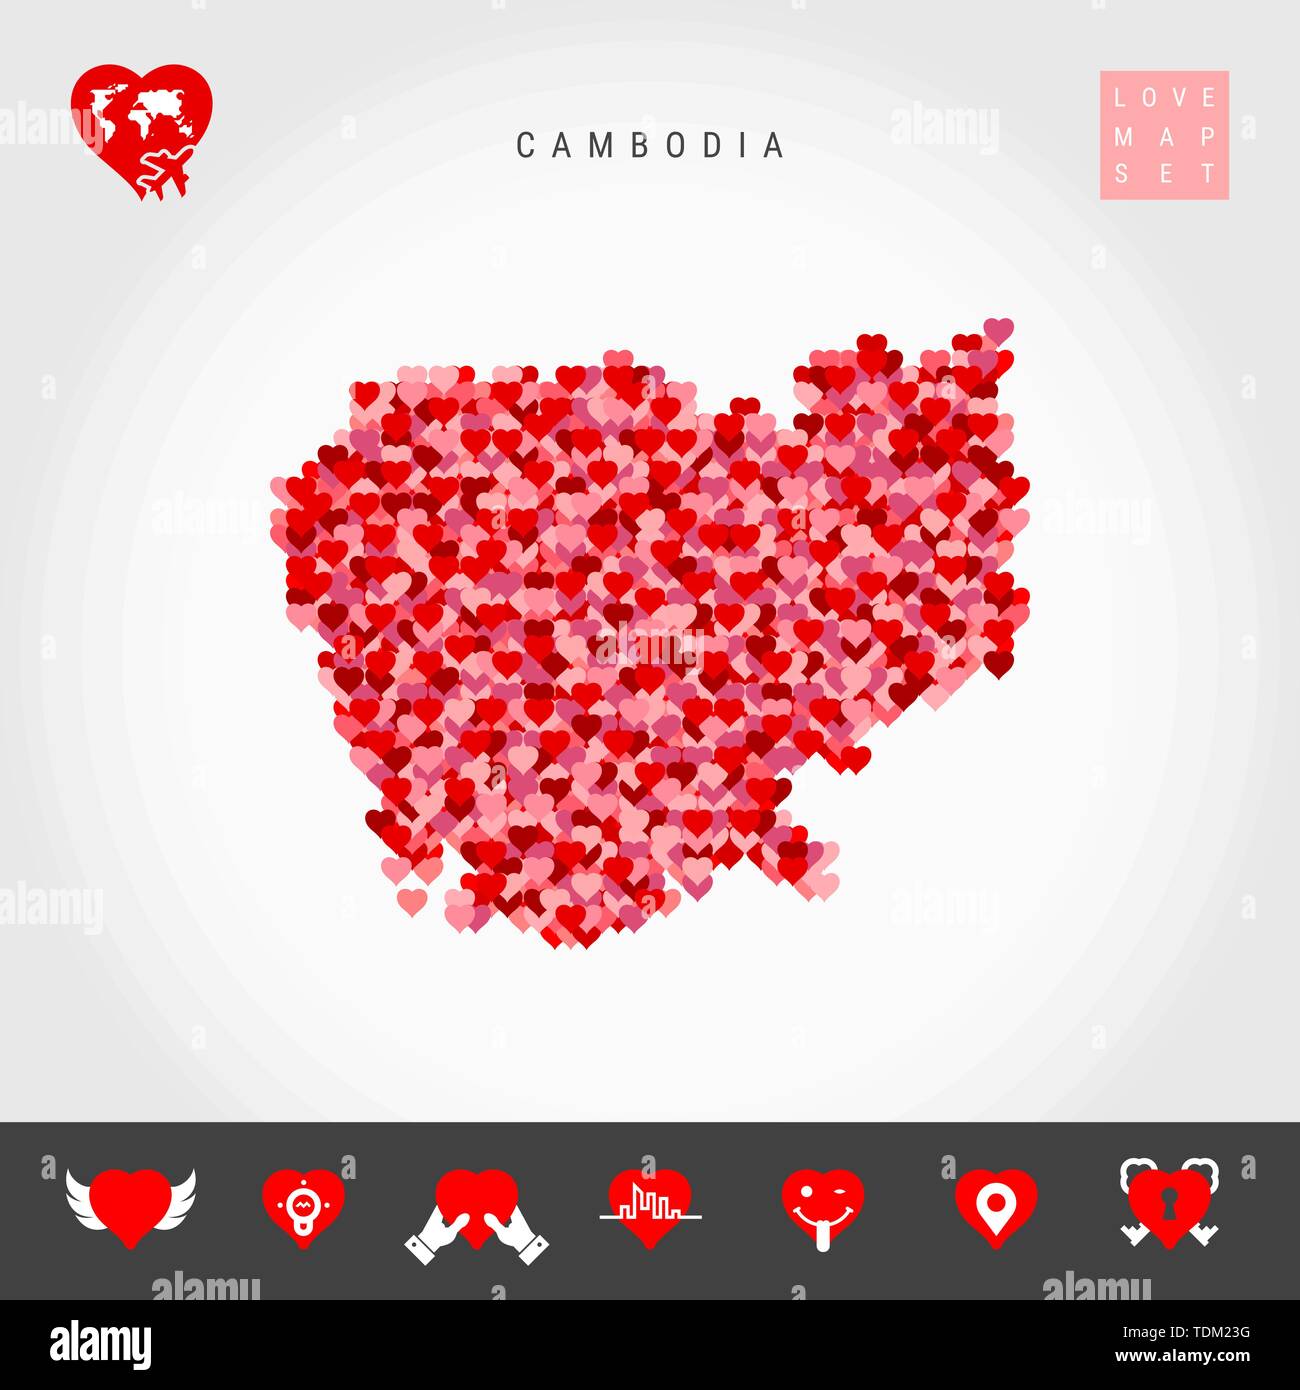 Ich liebe Kambodscha. Rot und rosa Herzen Muster vektorkarte von Kambodscha isoliert auf grauen Hintergrund. Liebe Symbol gesetzt. Stock Vektor